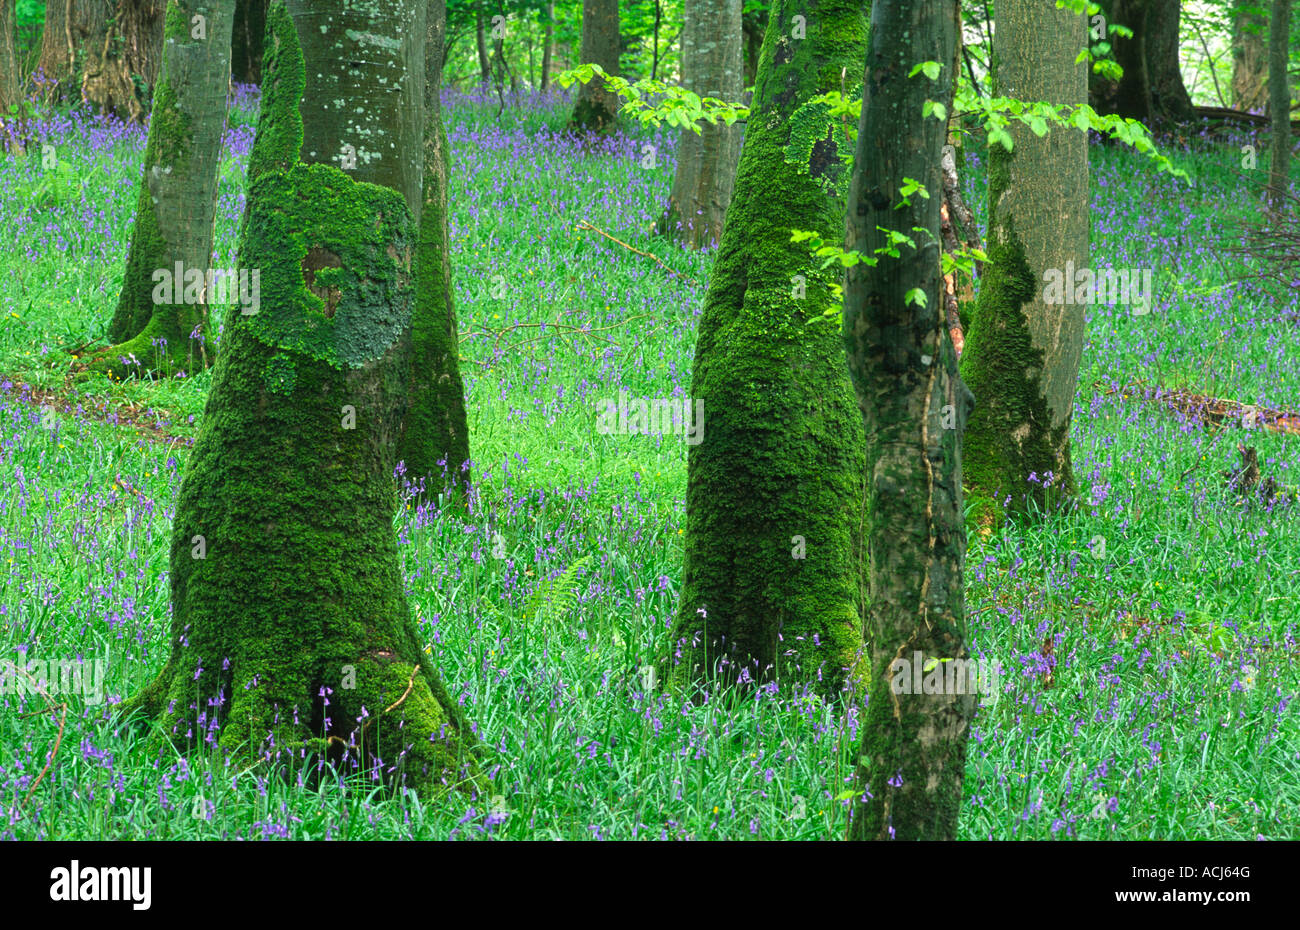 Printemps jacinthes et troncs d'arbres couverts de mousse dans un bois de hêtre dans le Parc National de Killarney. Le comté de Kerry, Irlande. Banque D'Images